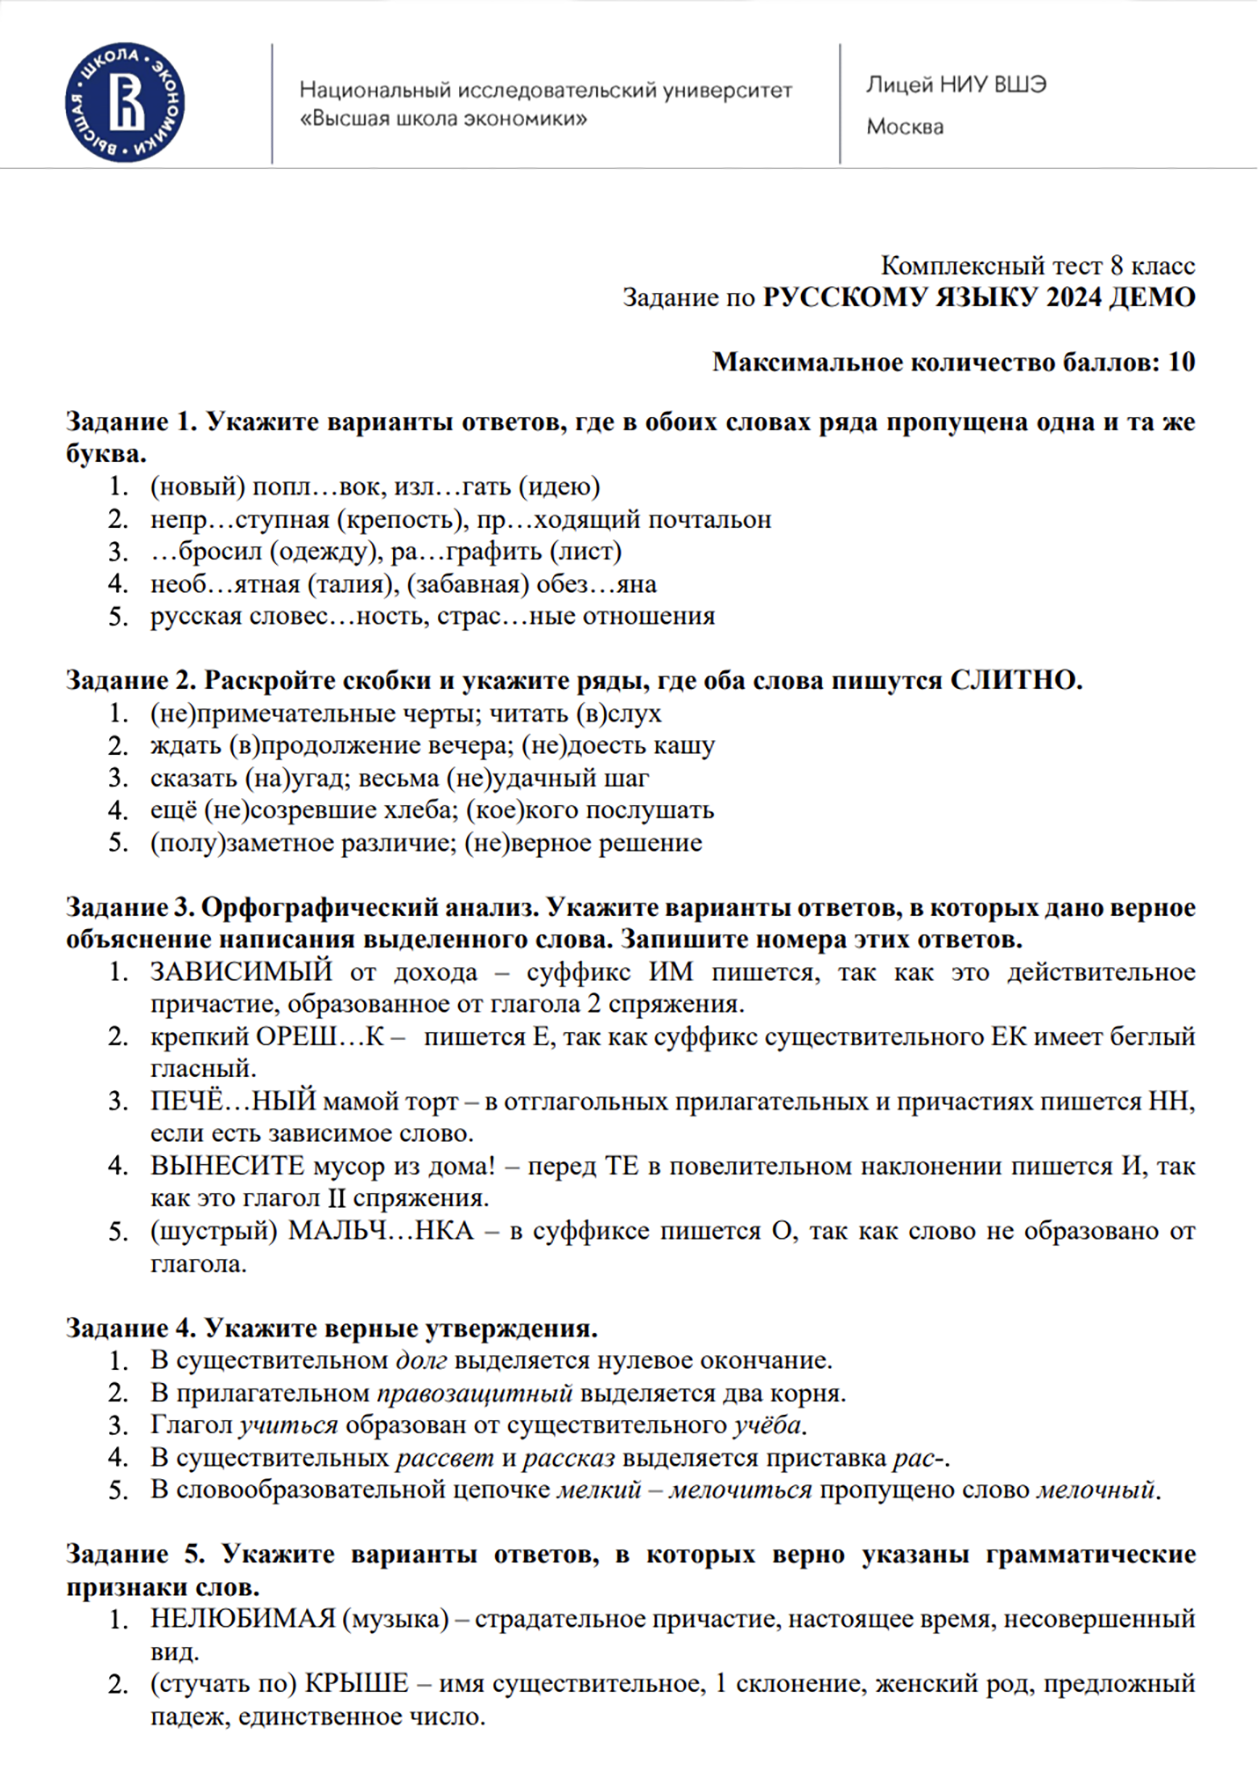 Пример заданий по русскому языку для 8 класса. Источник: сайт лицея НИУ ВШЭ